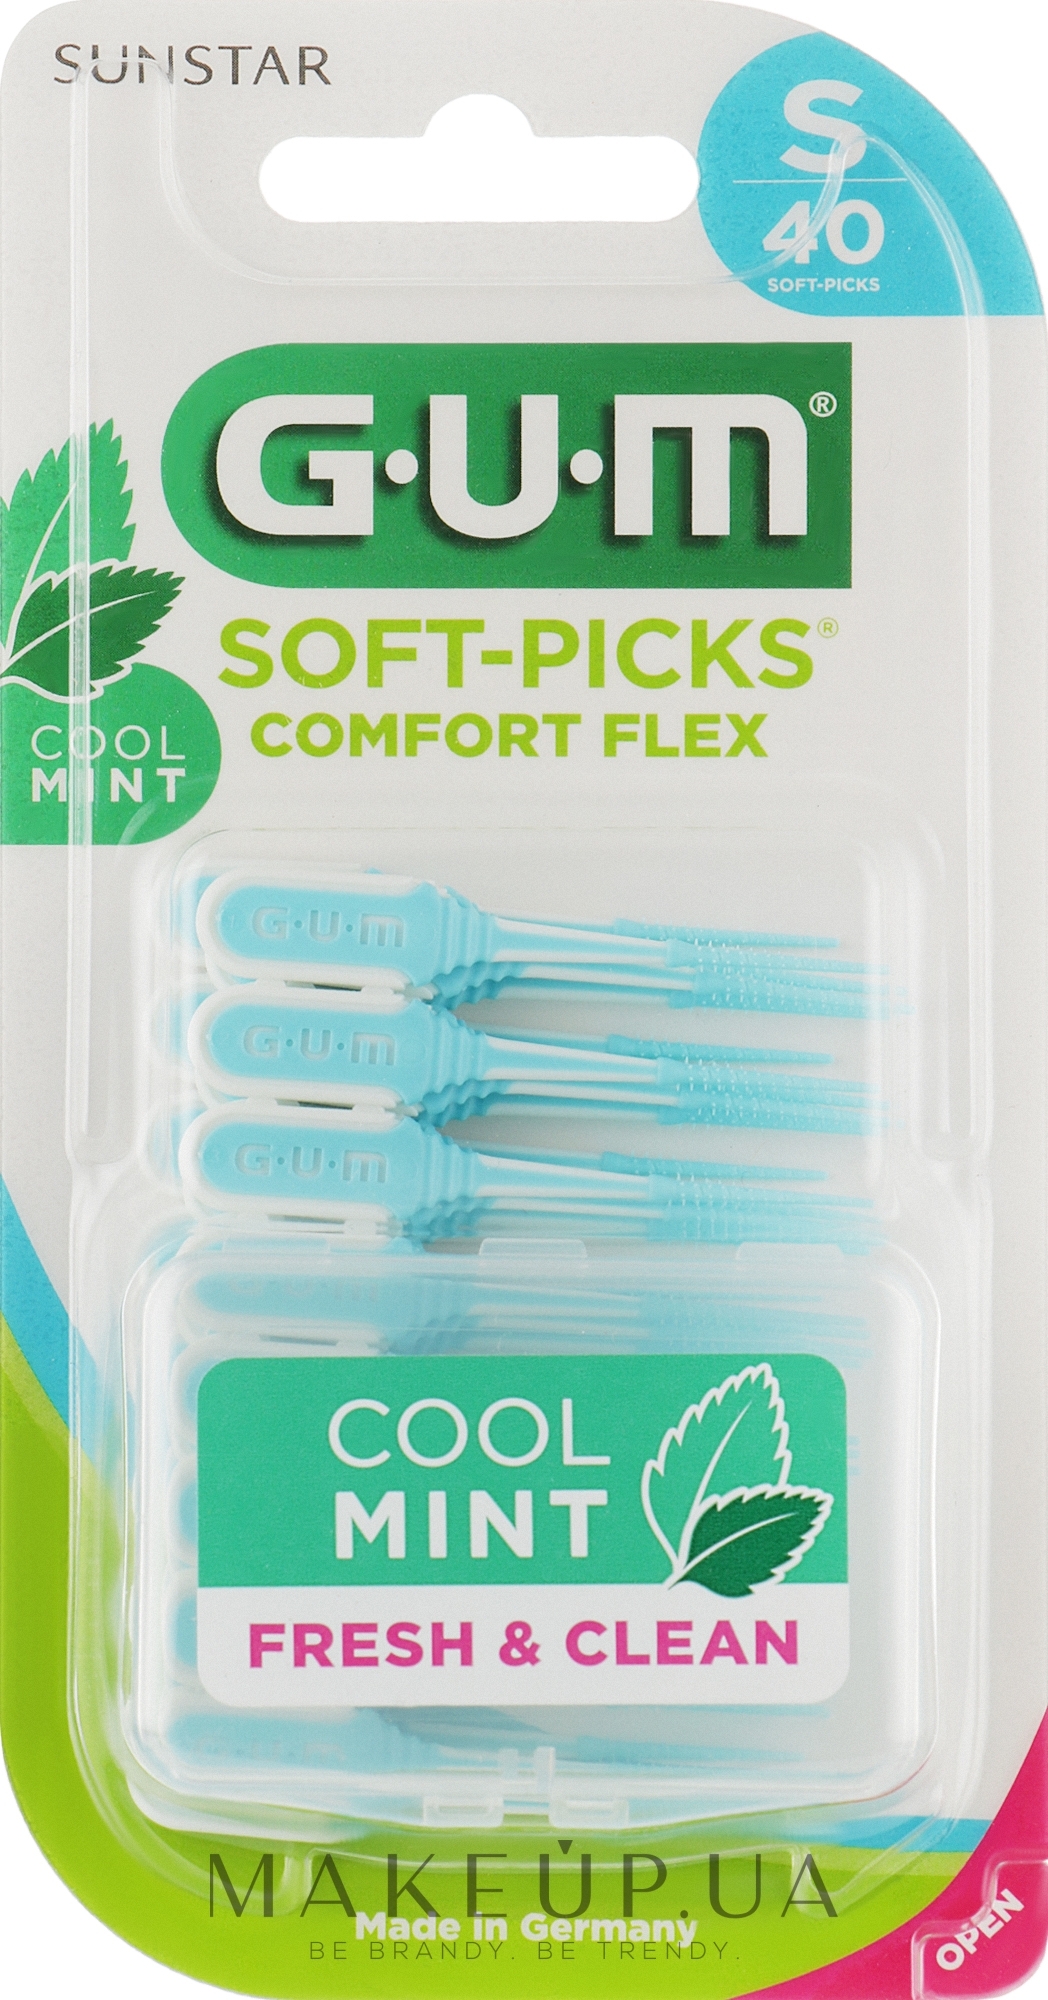 Резиновые межзубные ершики, размер S, 40 шт. - Sunstar Gum Soft-Picks Comfort Flex Cool Mint  — фото 40шт